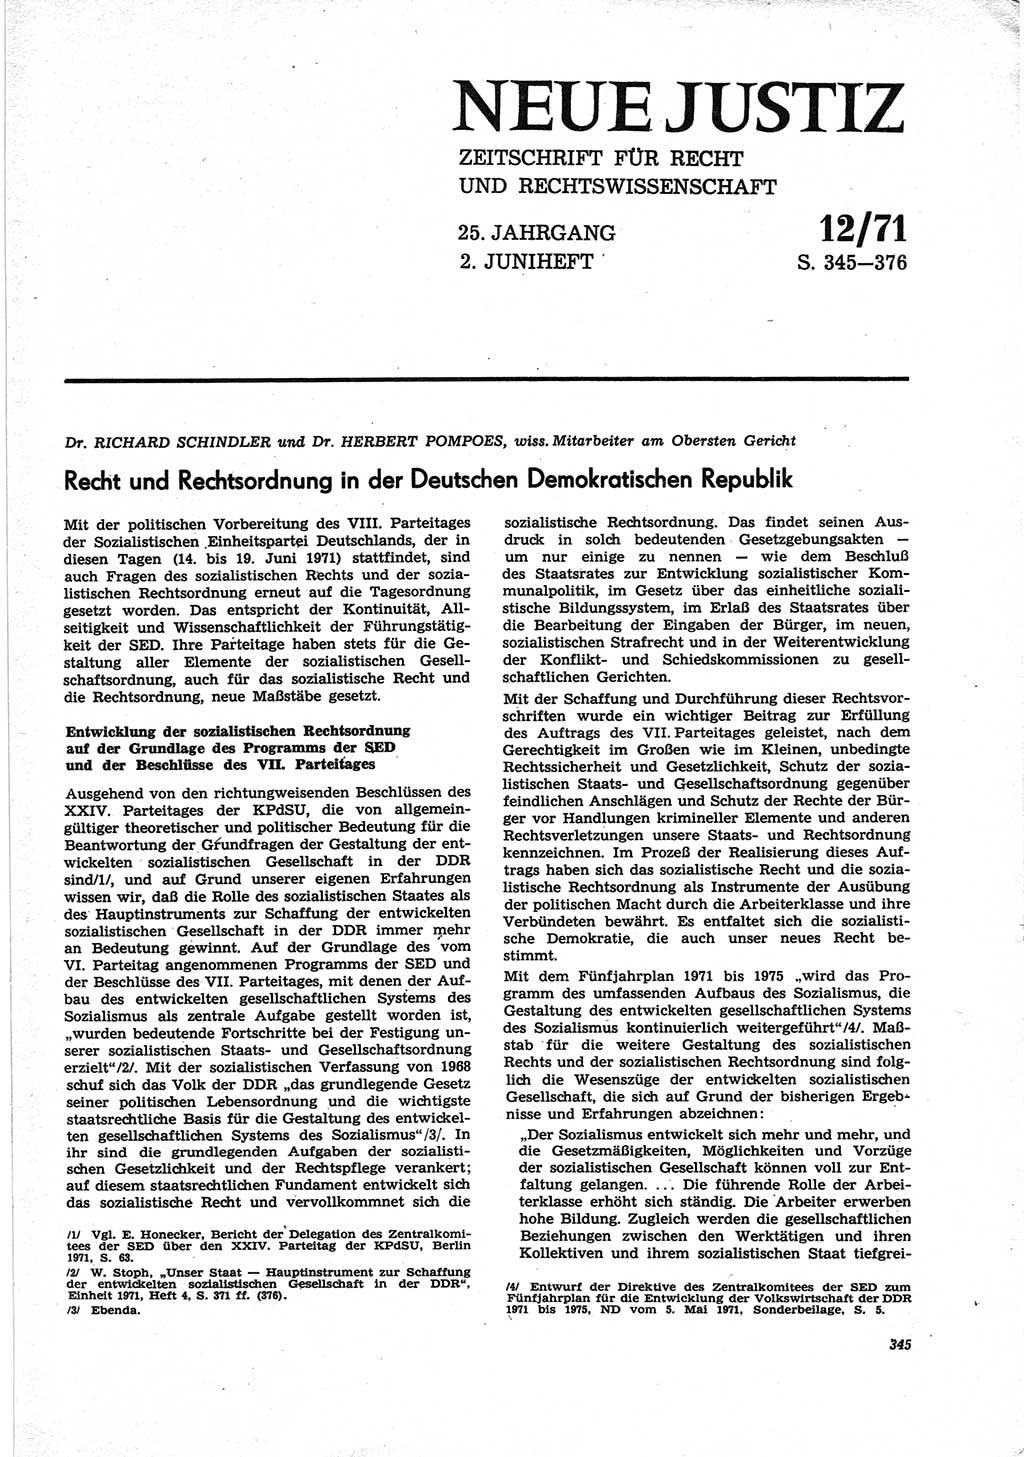 Neue Justiz (NJ), Zeitschrift für Recht und Rechtswissenschaft [Deutsche Demokratische Republik (DDR)], 25. Jahrgang 1971, Seite 345 (NJ DDR 1971, S. 345)